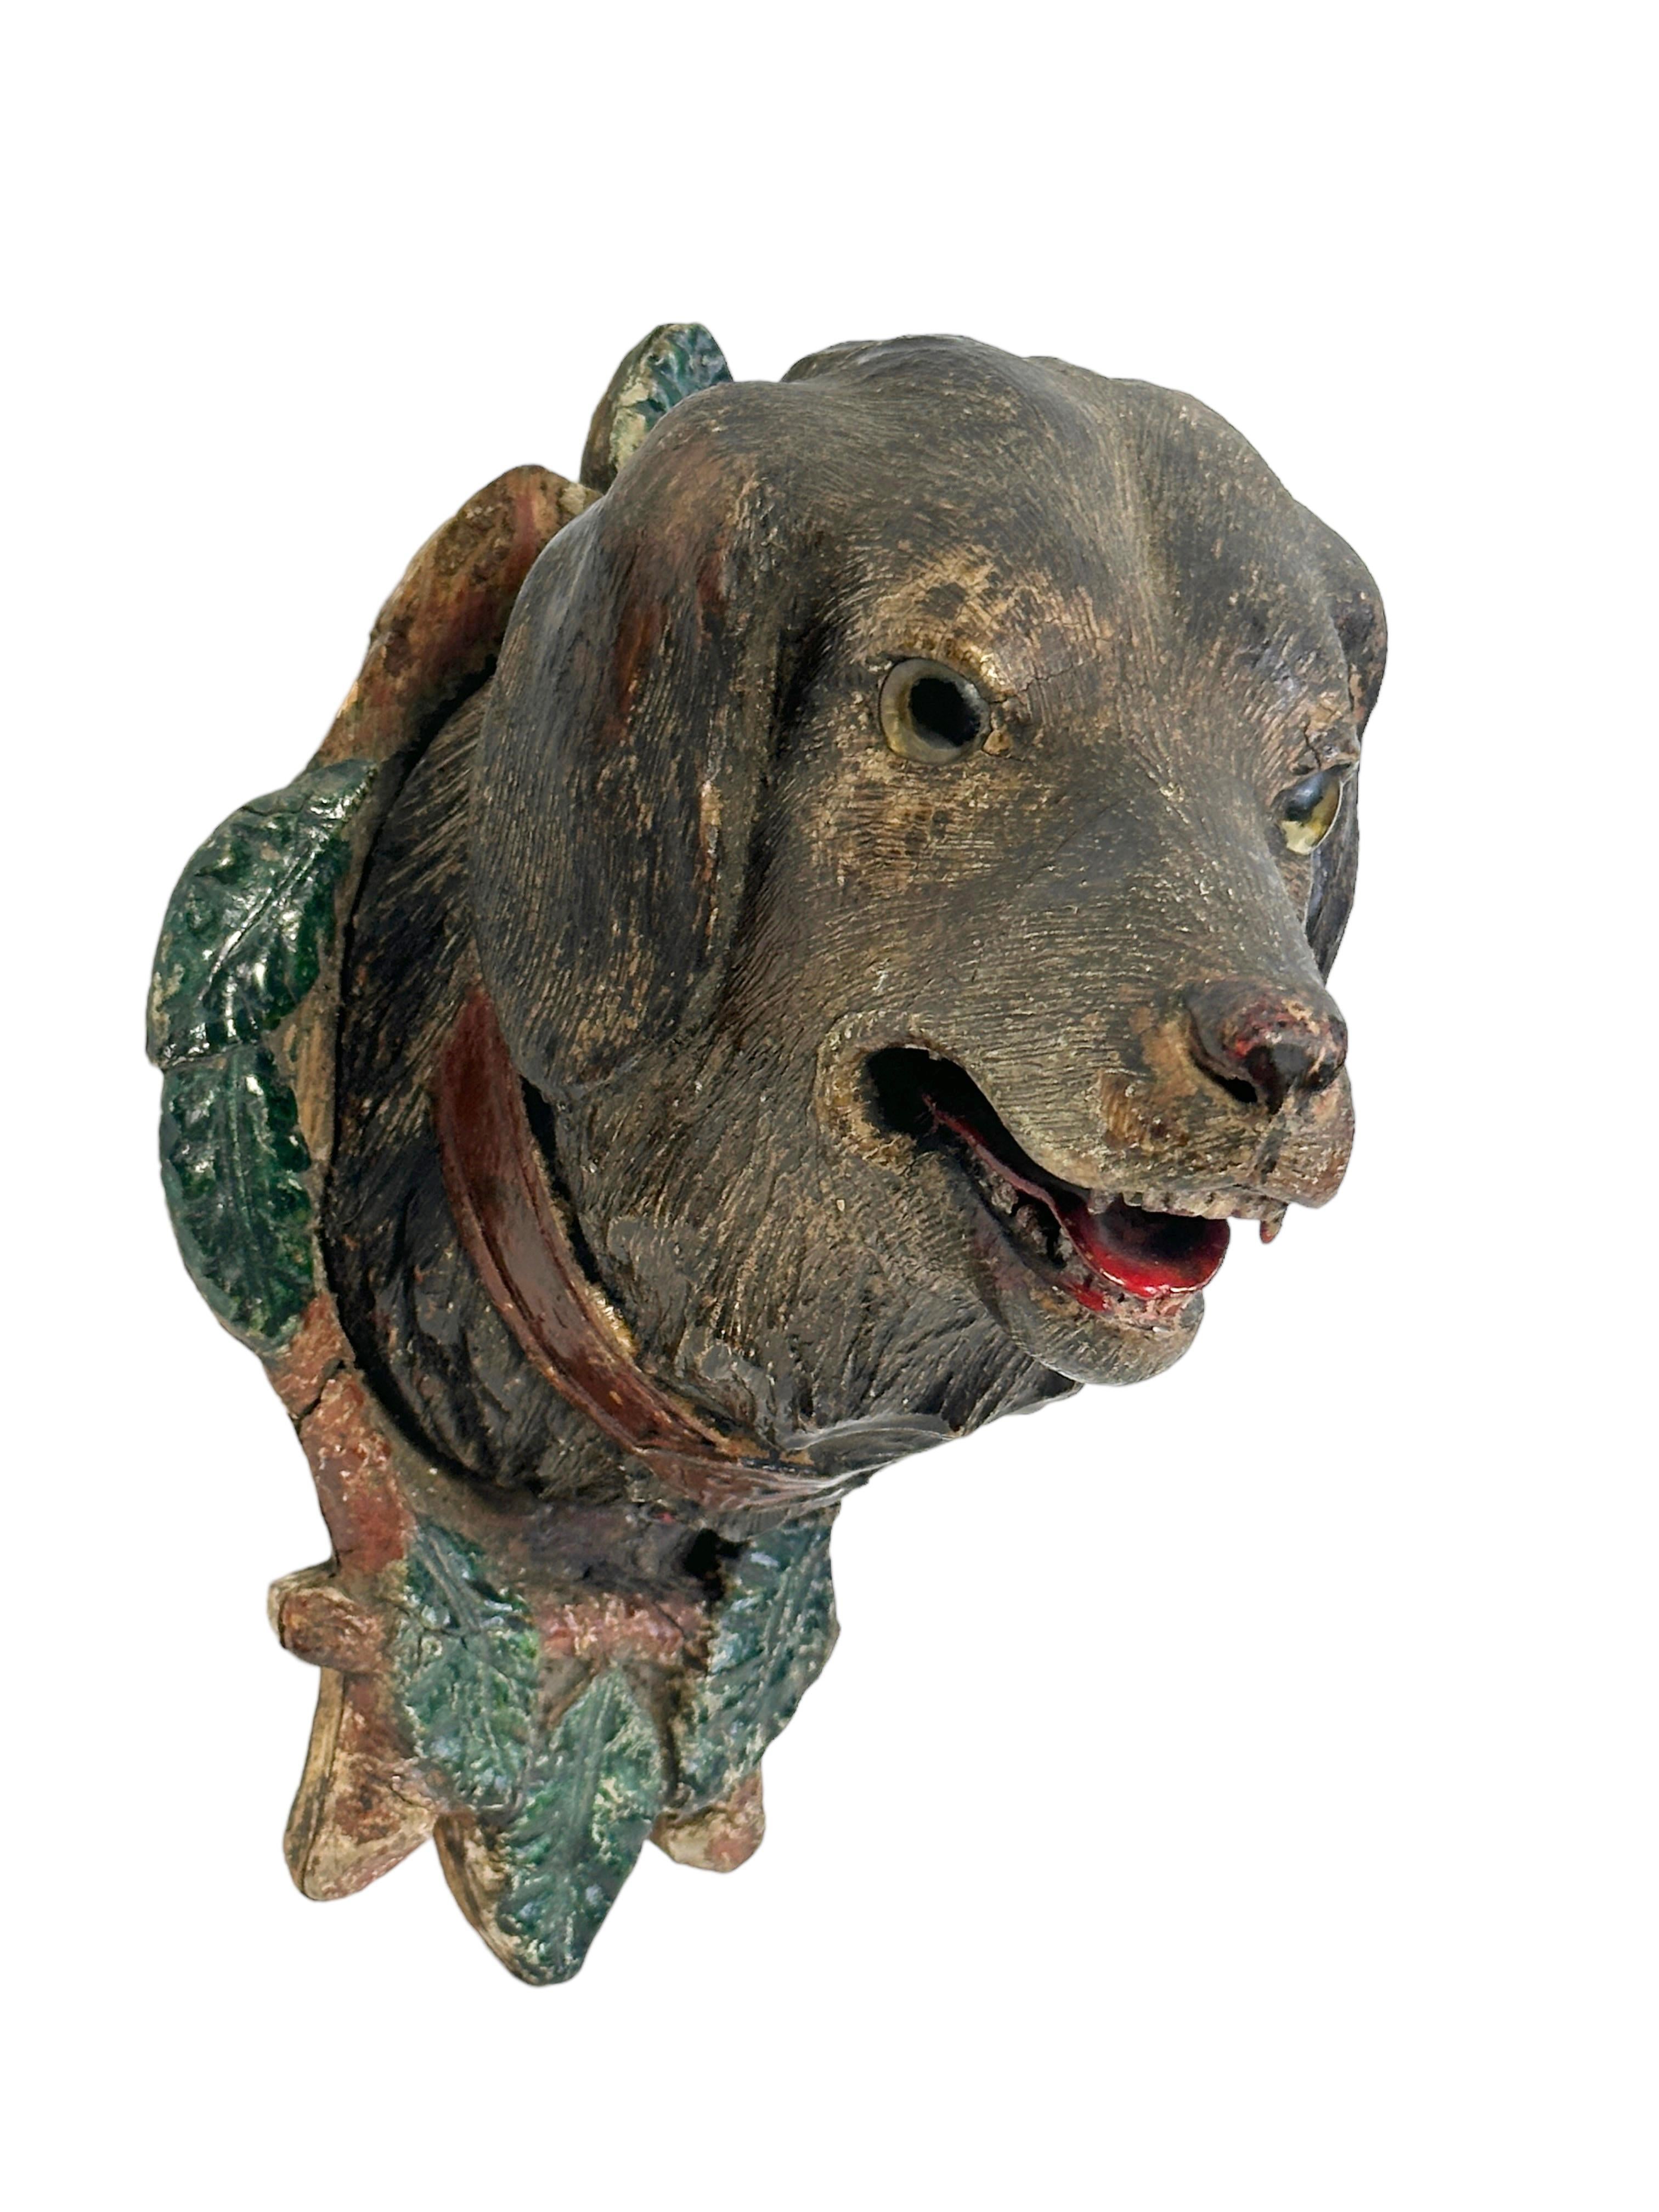 Ein toll aussehender handgeschnitzter originaler hölzerner Folk Art Hundekopf mit Glasaugen, Wanddekoration. Ein großartiges Stück für ein passendes Ambiente in einem Trophäenzimmer oder dem Büro eines Jägers oder Waldarbeiters. Höchstwahrscheinlich